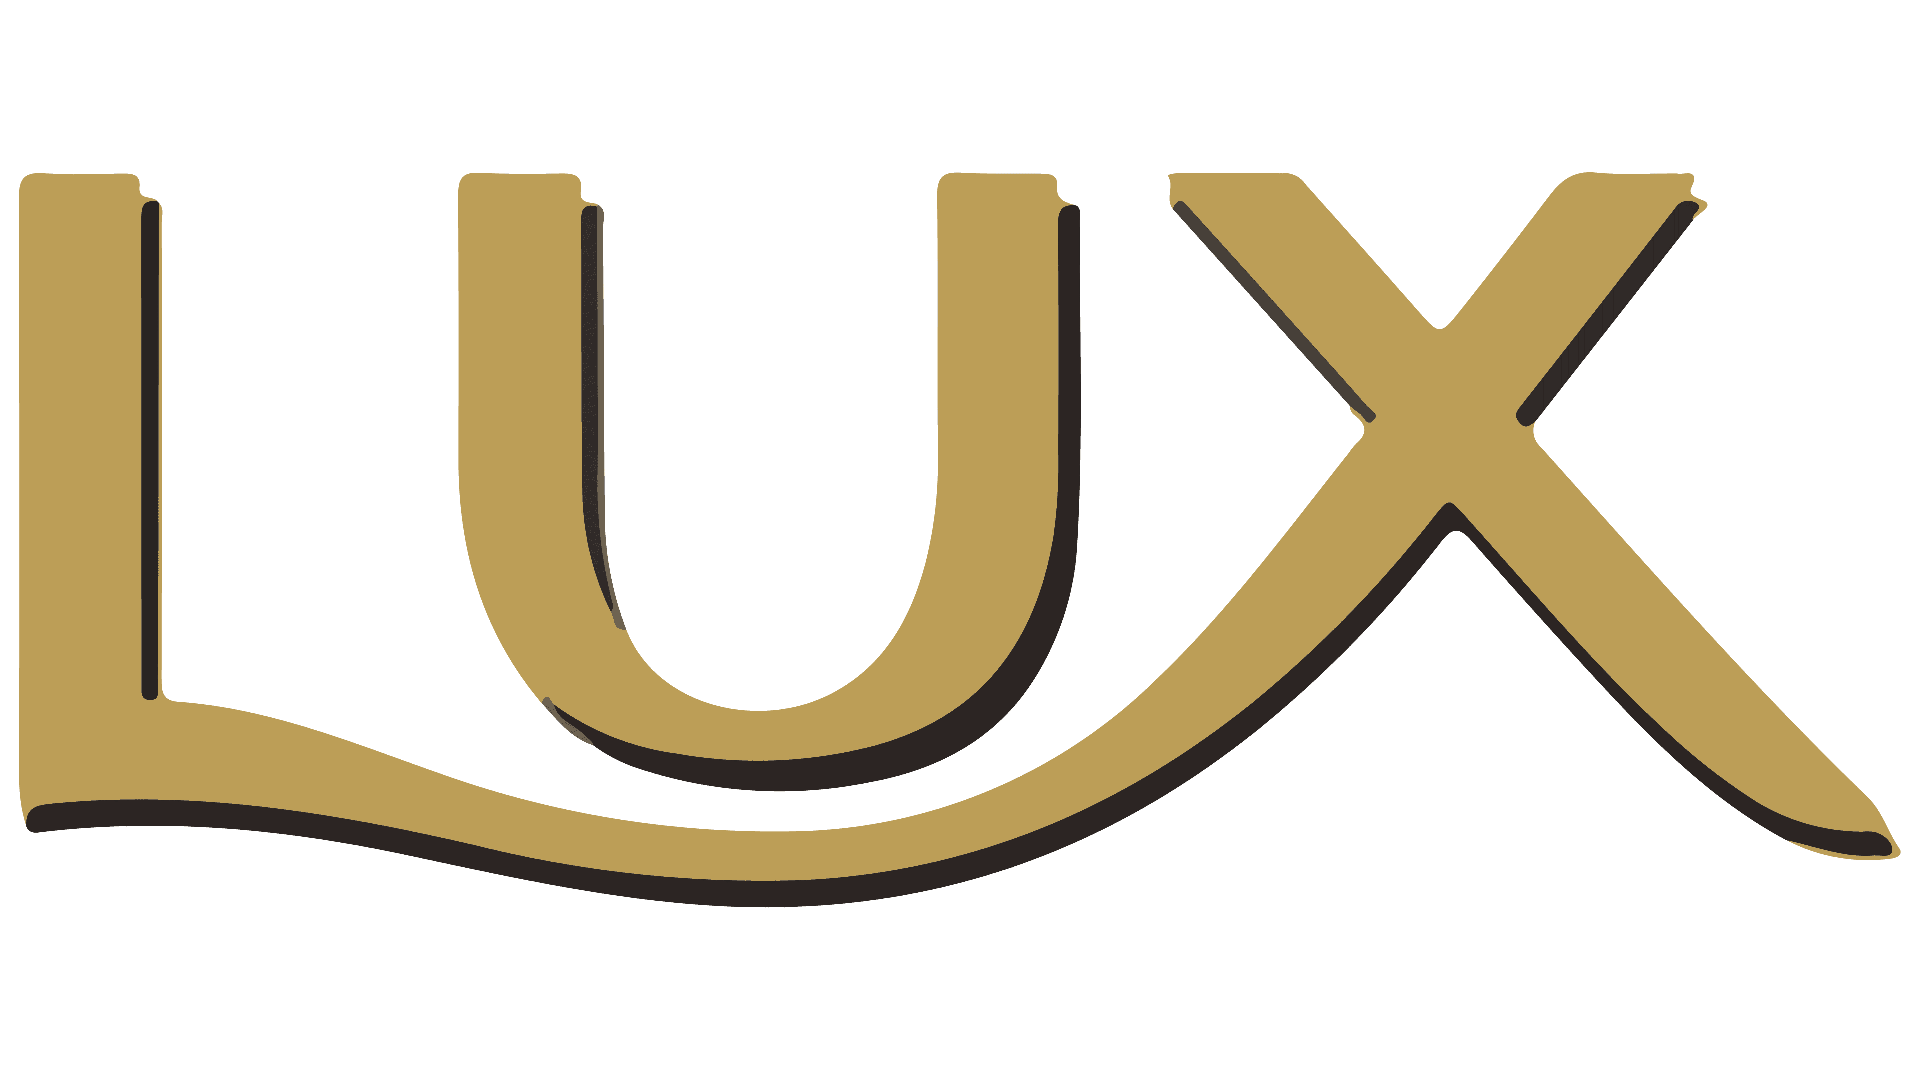 العلامة التجارية: Lux